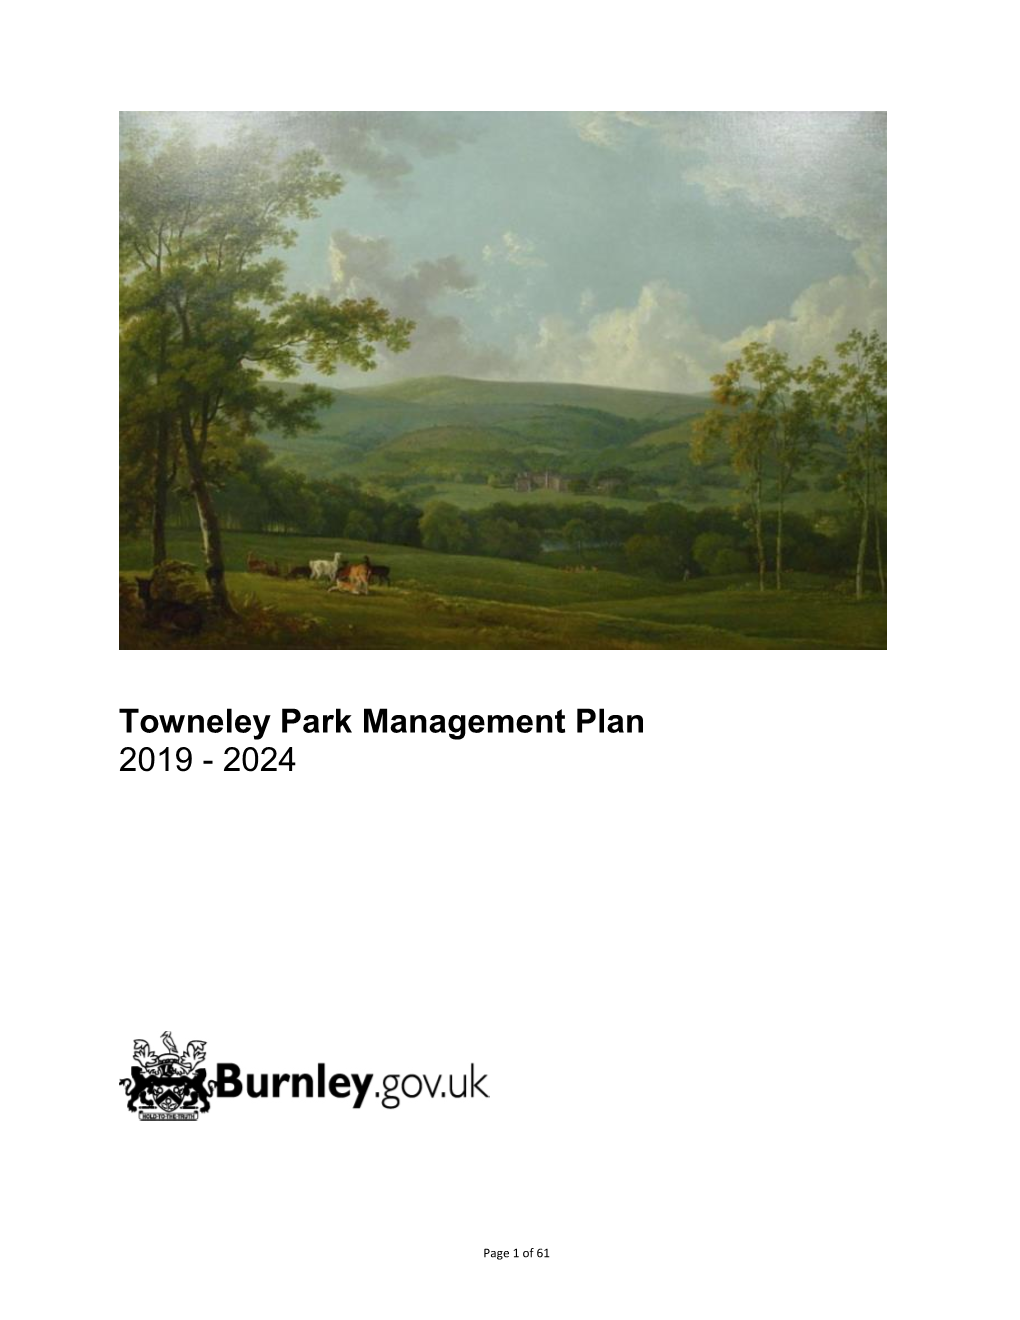 Towneley Park Management Plan 2019 - 2024